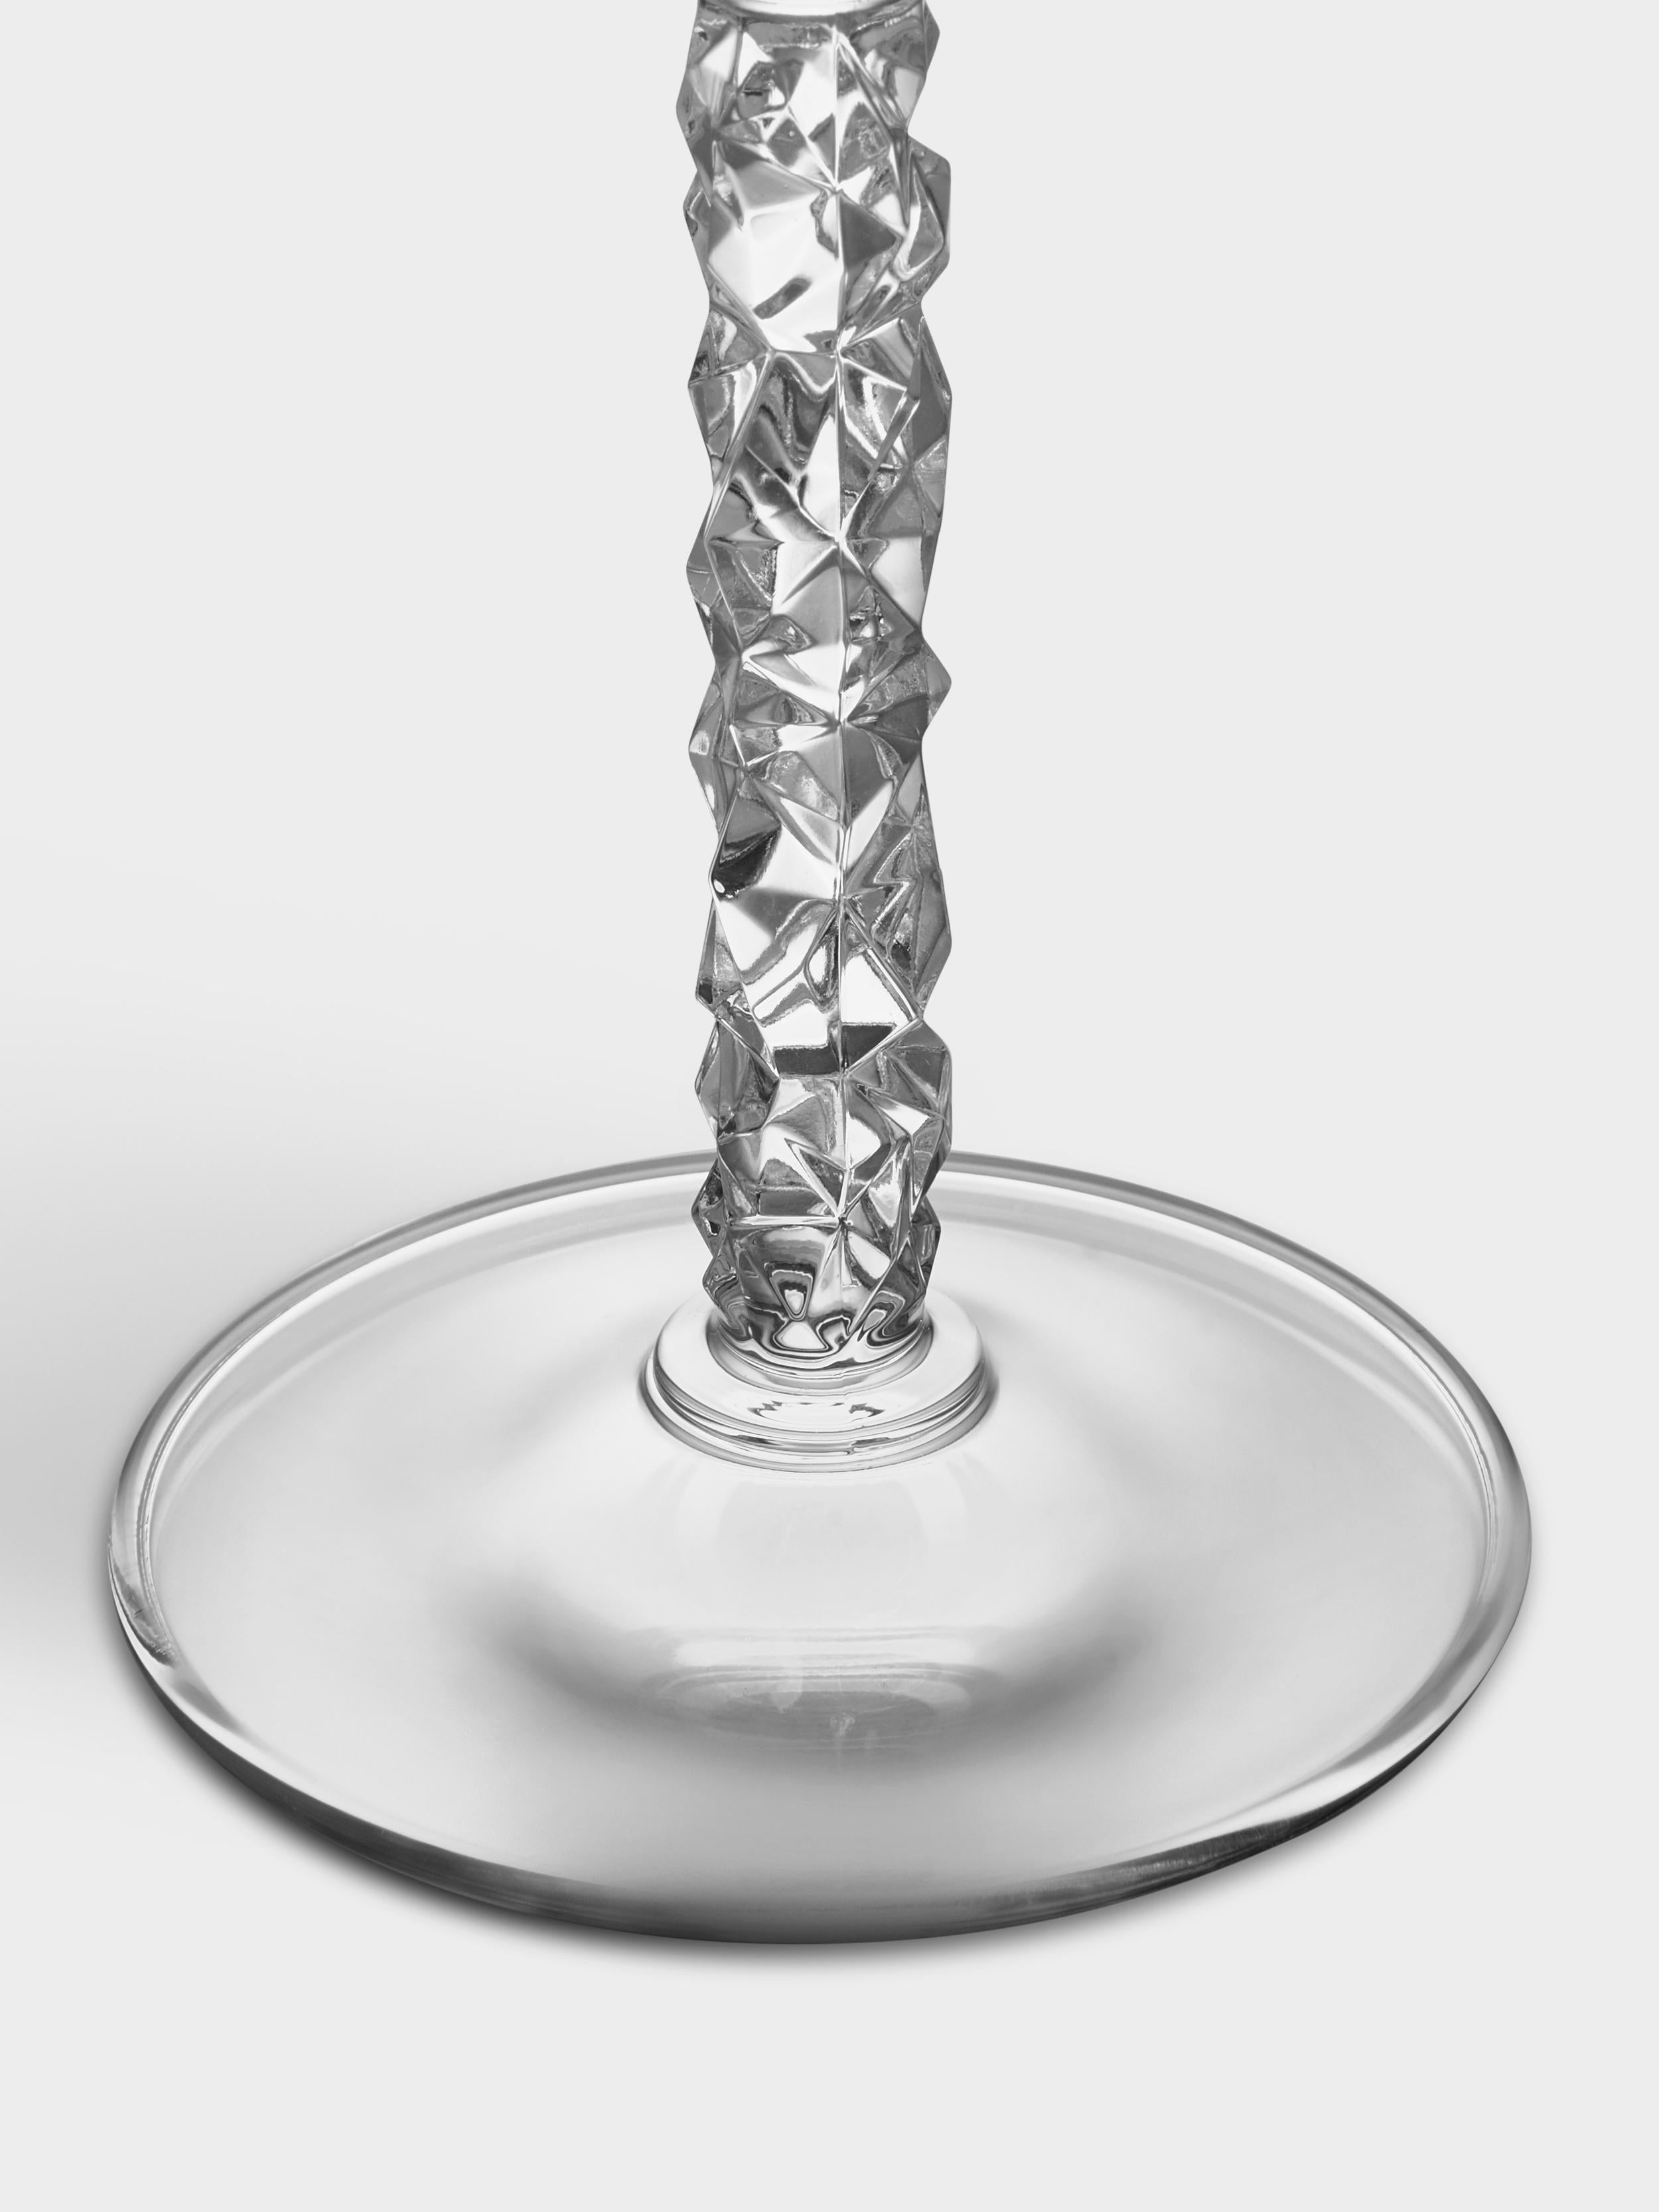 La collection Carat est basée sur une interprétation contemporaine du verre taillé traditionnel qui a fait la renommée mondiale d'Orrefors. La Collection S est dotée d'une tige recouverte du motif asymétrique caractéristique de la collection, qui